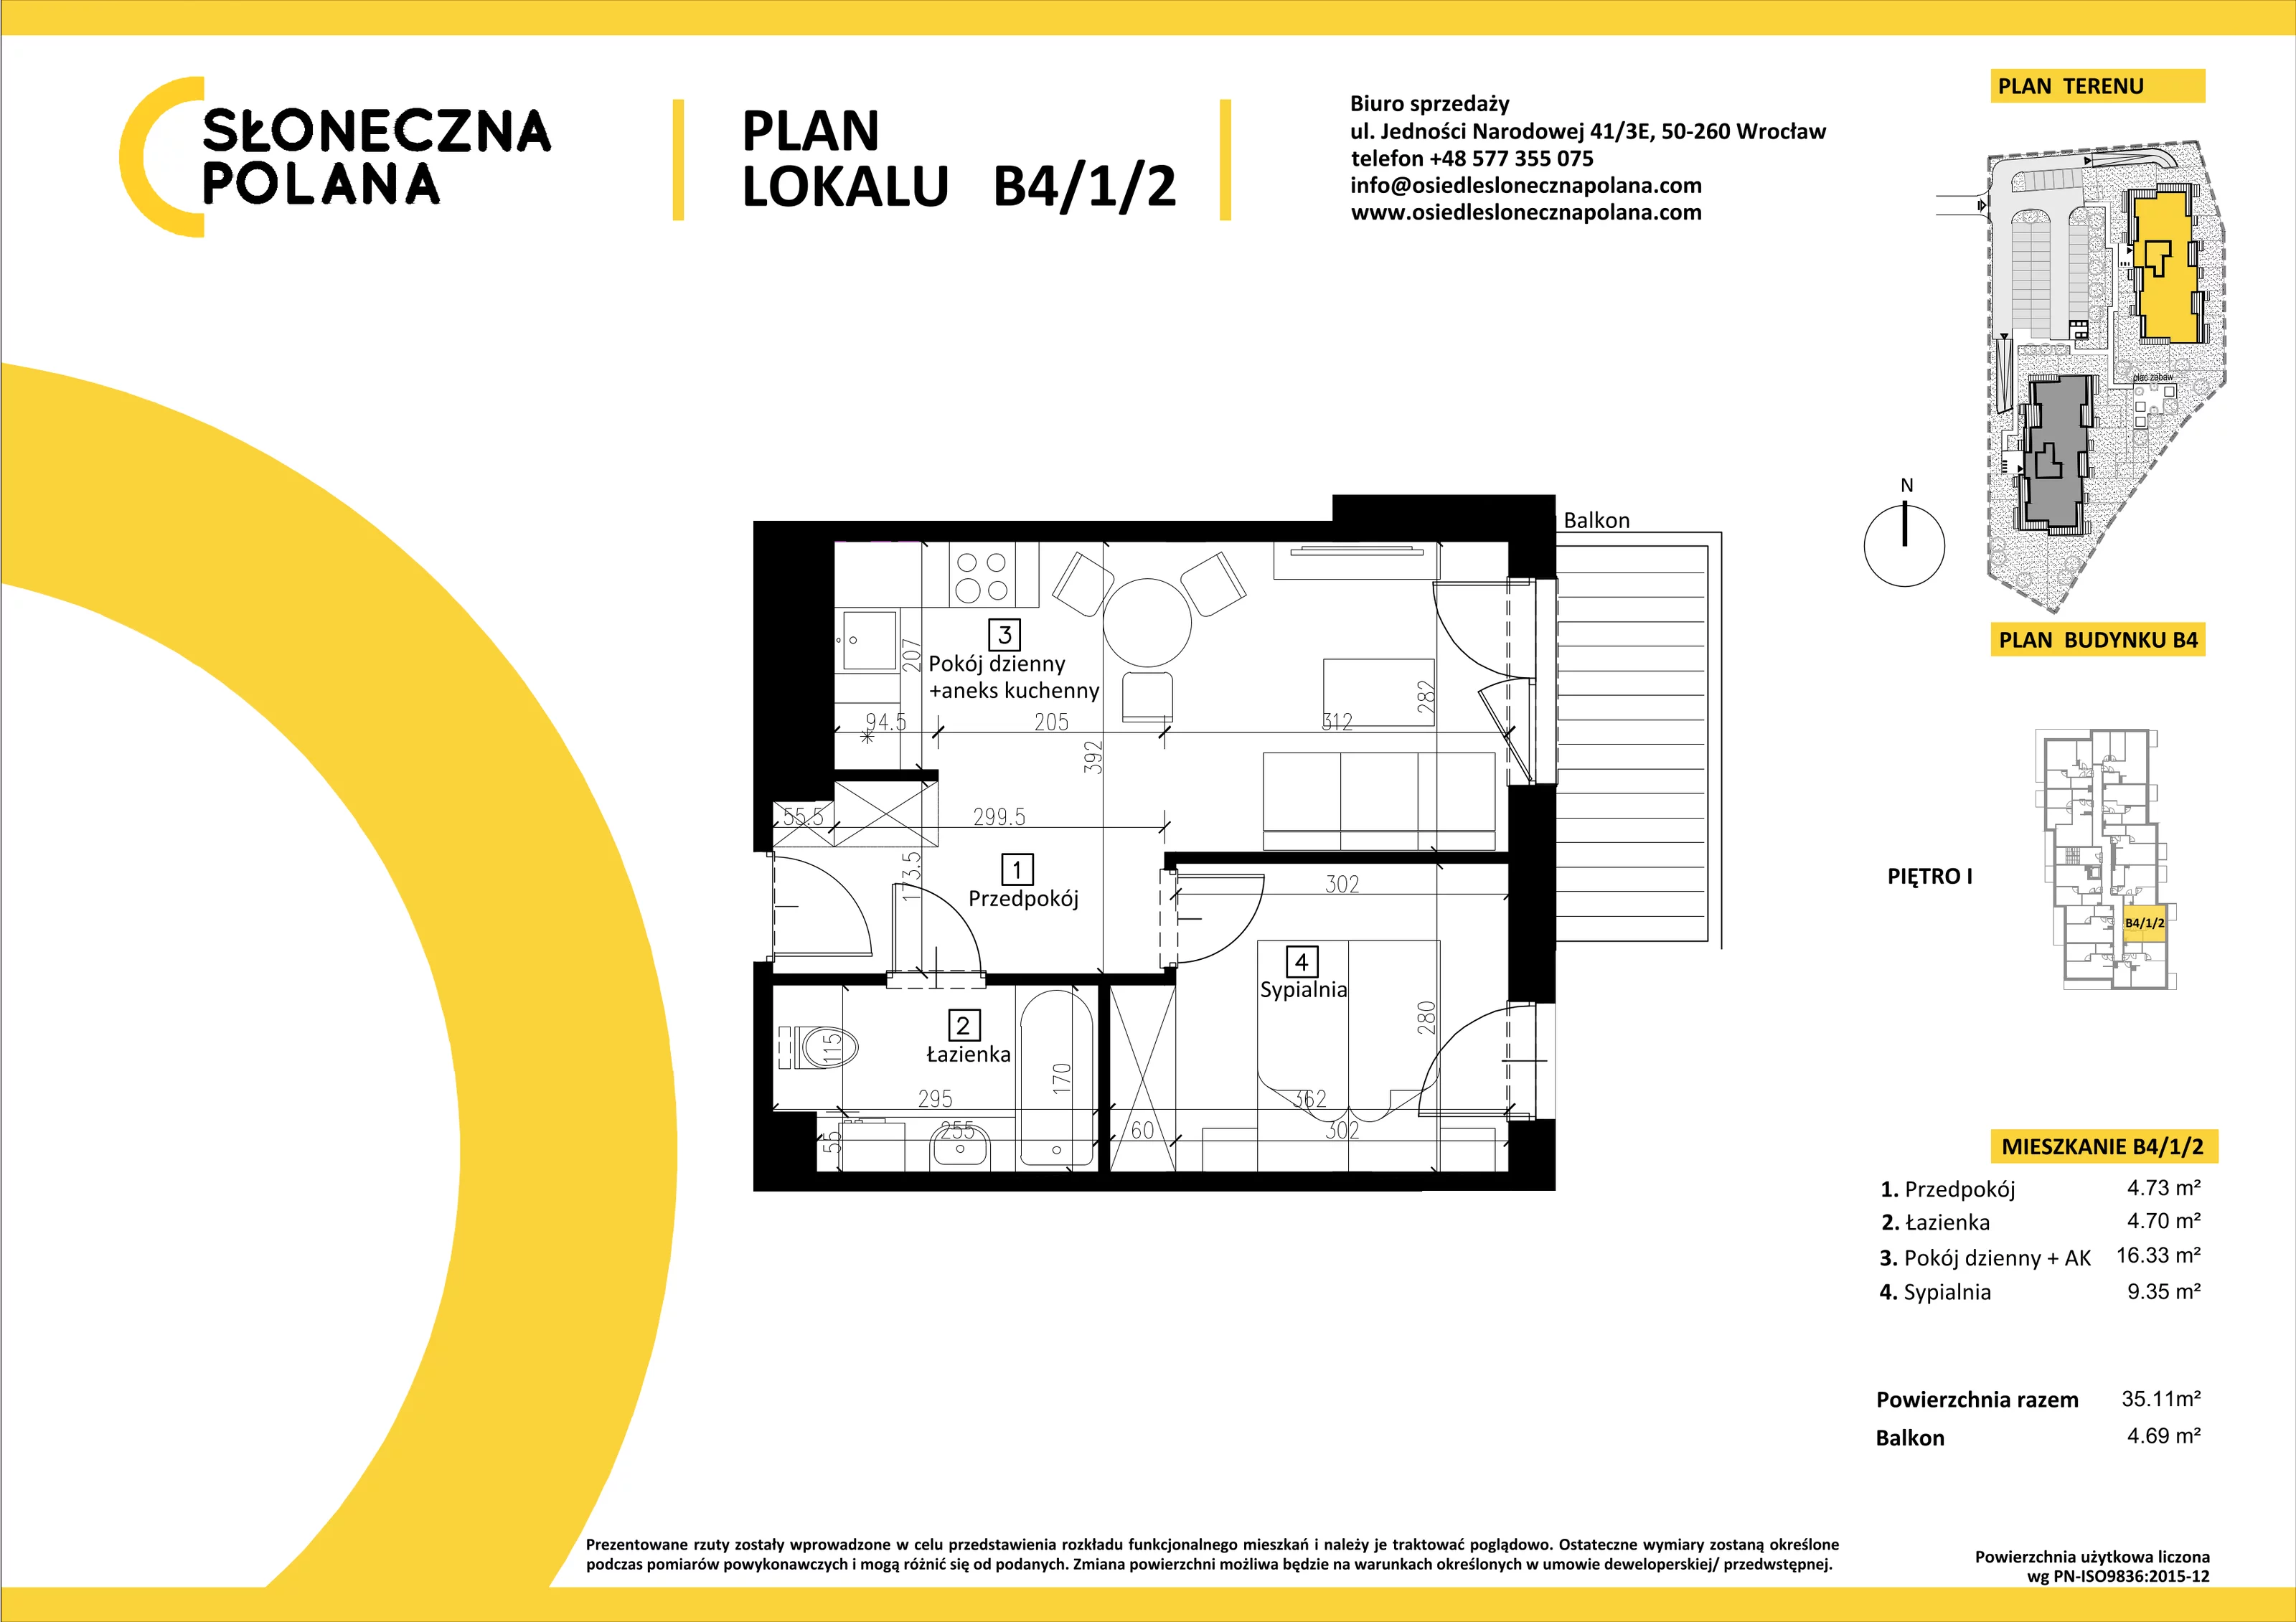 Mieszkanie 35,11 m², piętro 1, oferta nr B4/1/2, Słoneczna Polana, Kudowa-Zdrój, ul. Bluszczowa